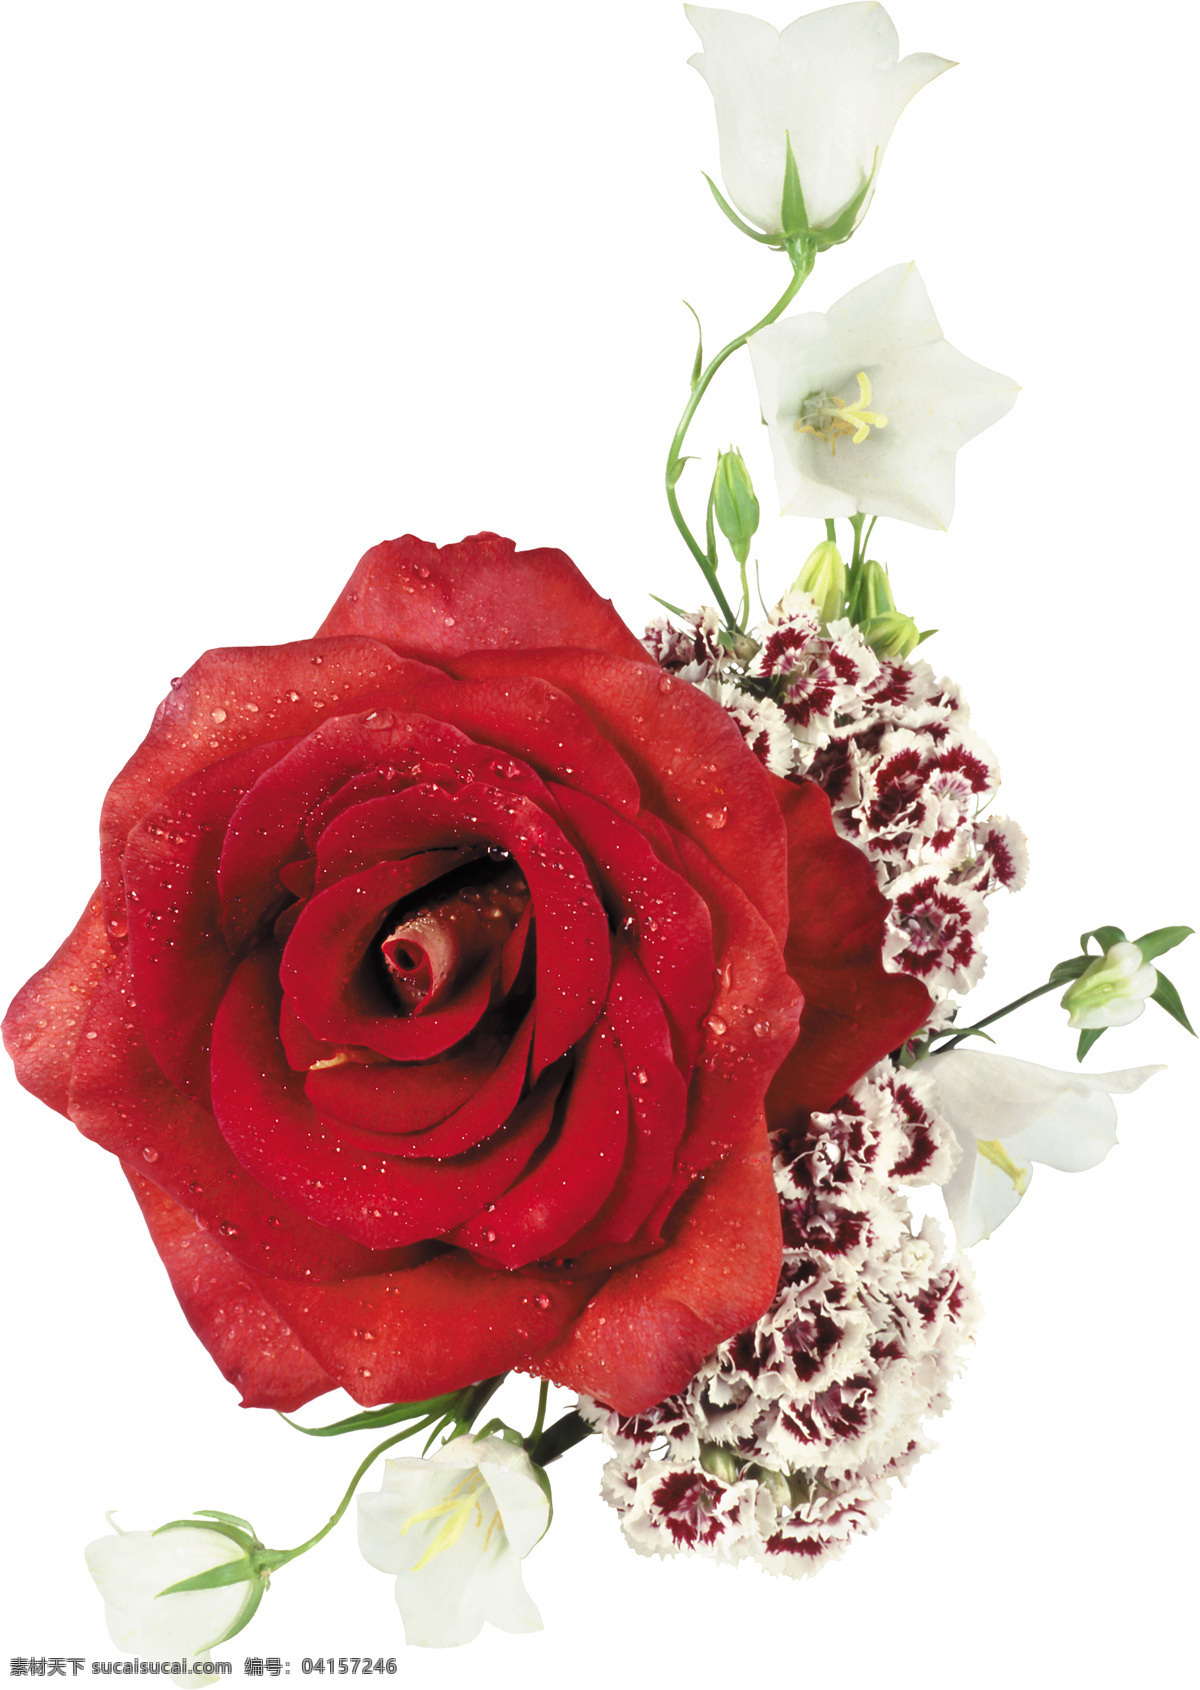 玫瑰花素材 玫瑰 玫瑰花束 红玫瑰 玫瑰特写 黄色玫瑰 白色玫瑰 花草 生物世界